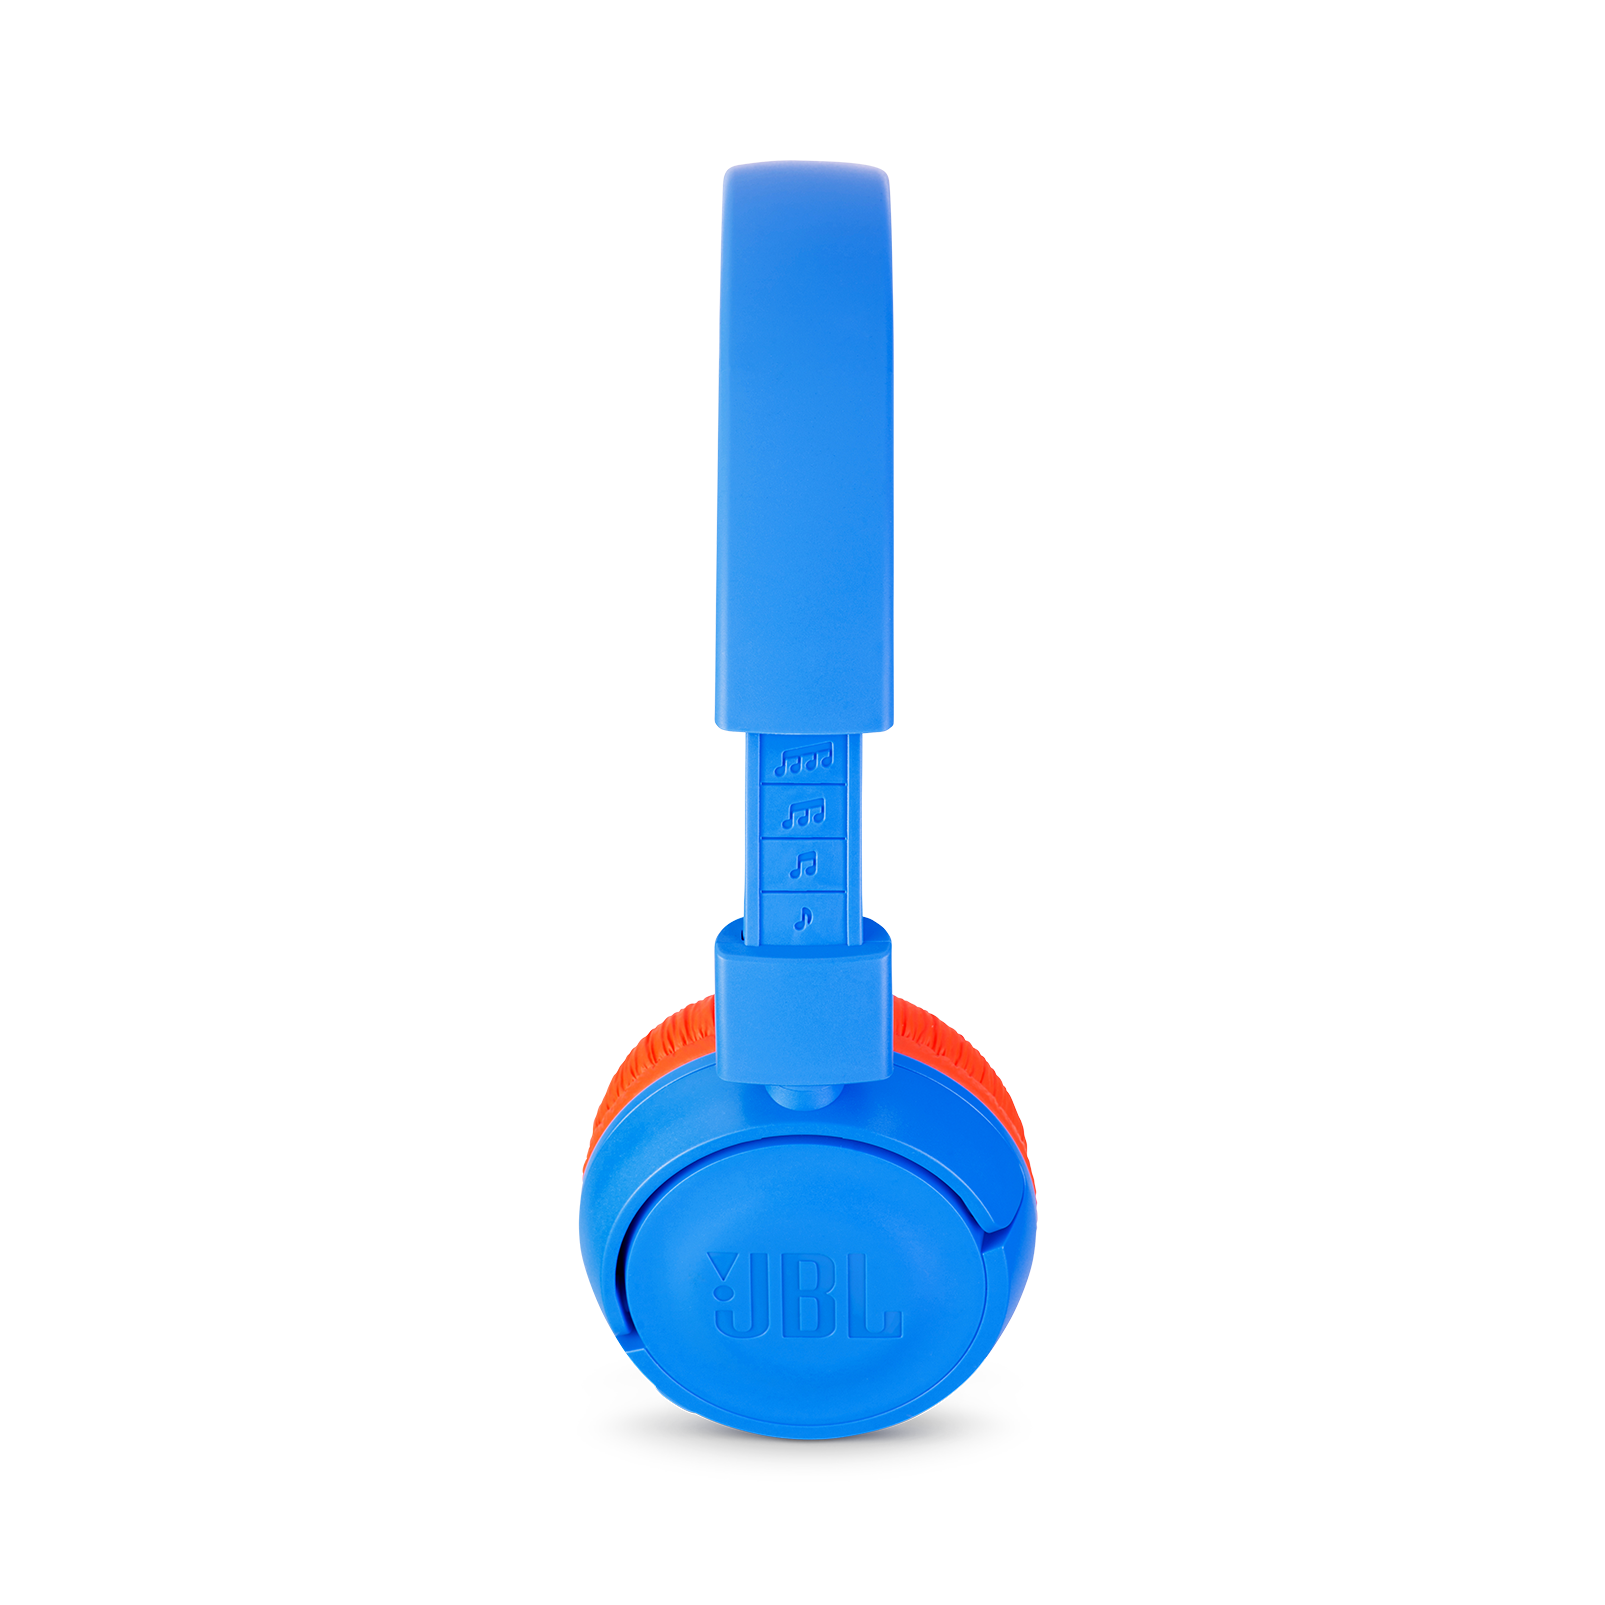 JBL JR300BT - Rocker Blue - Kids Wireless on-ear headphones - Detailshot 1